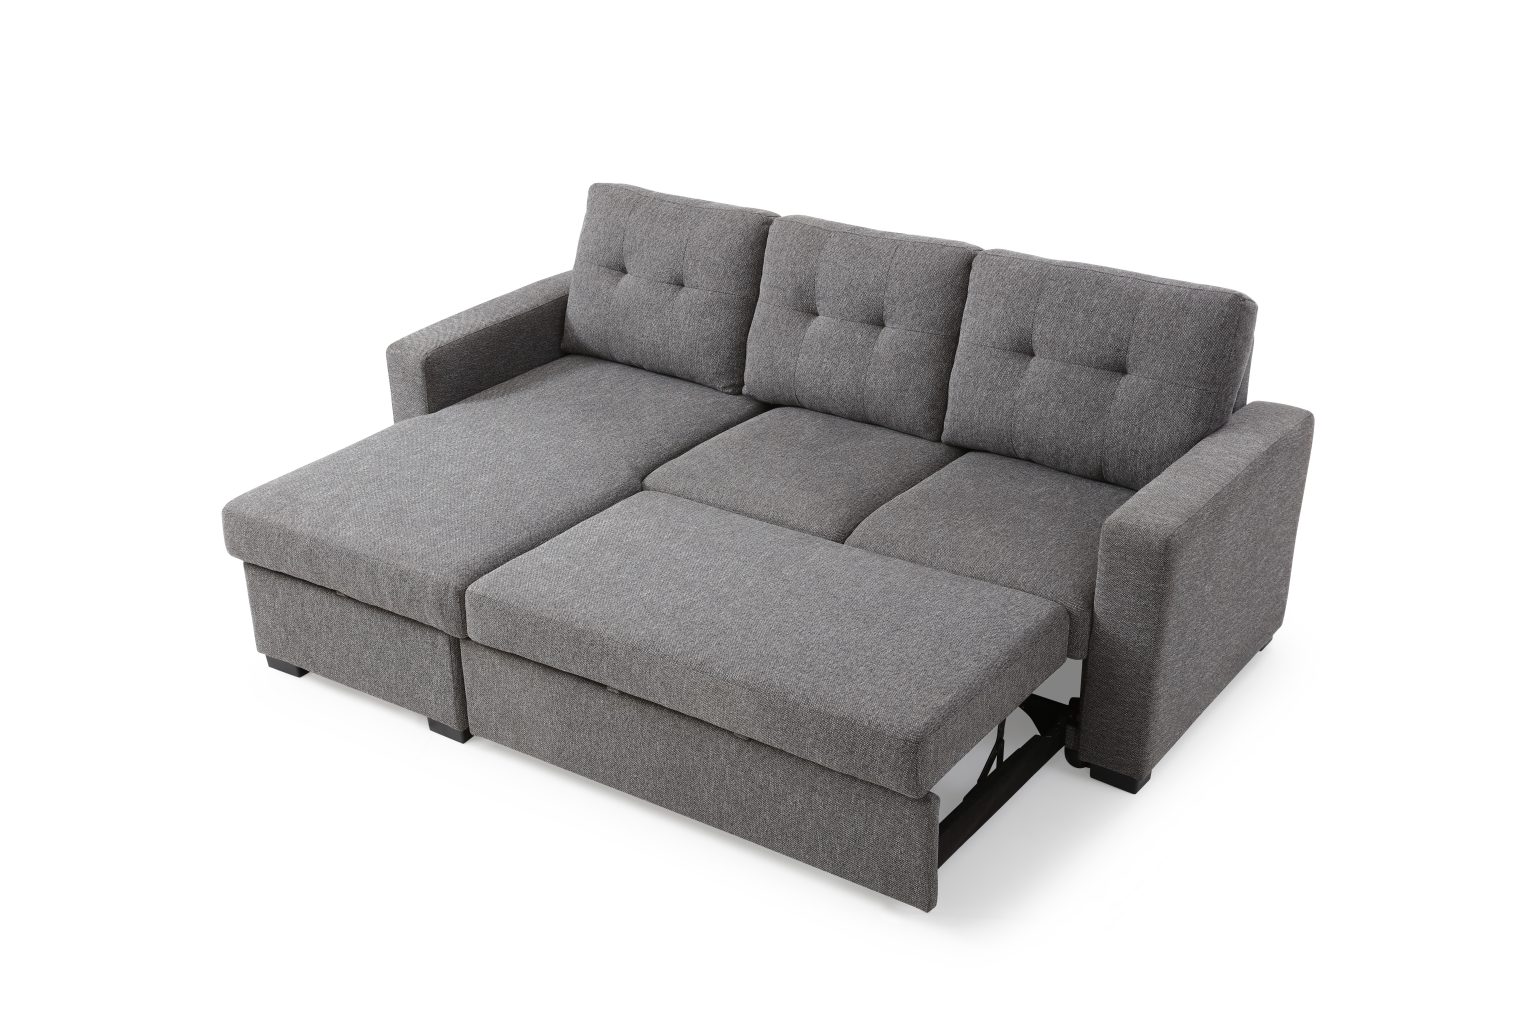 cheap corner sofa beds uk